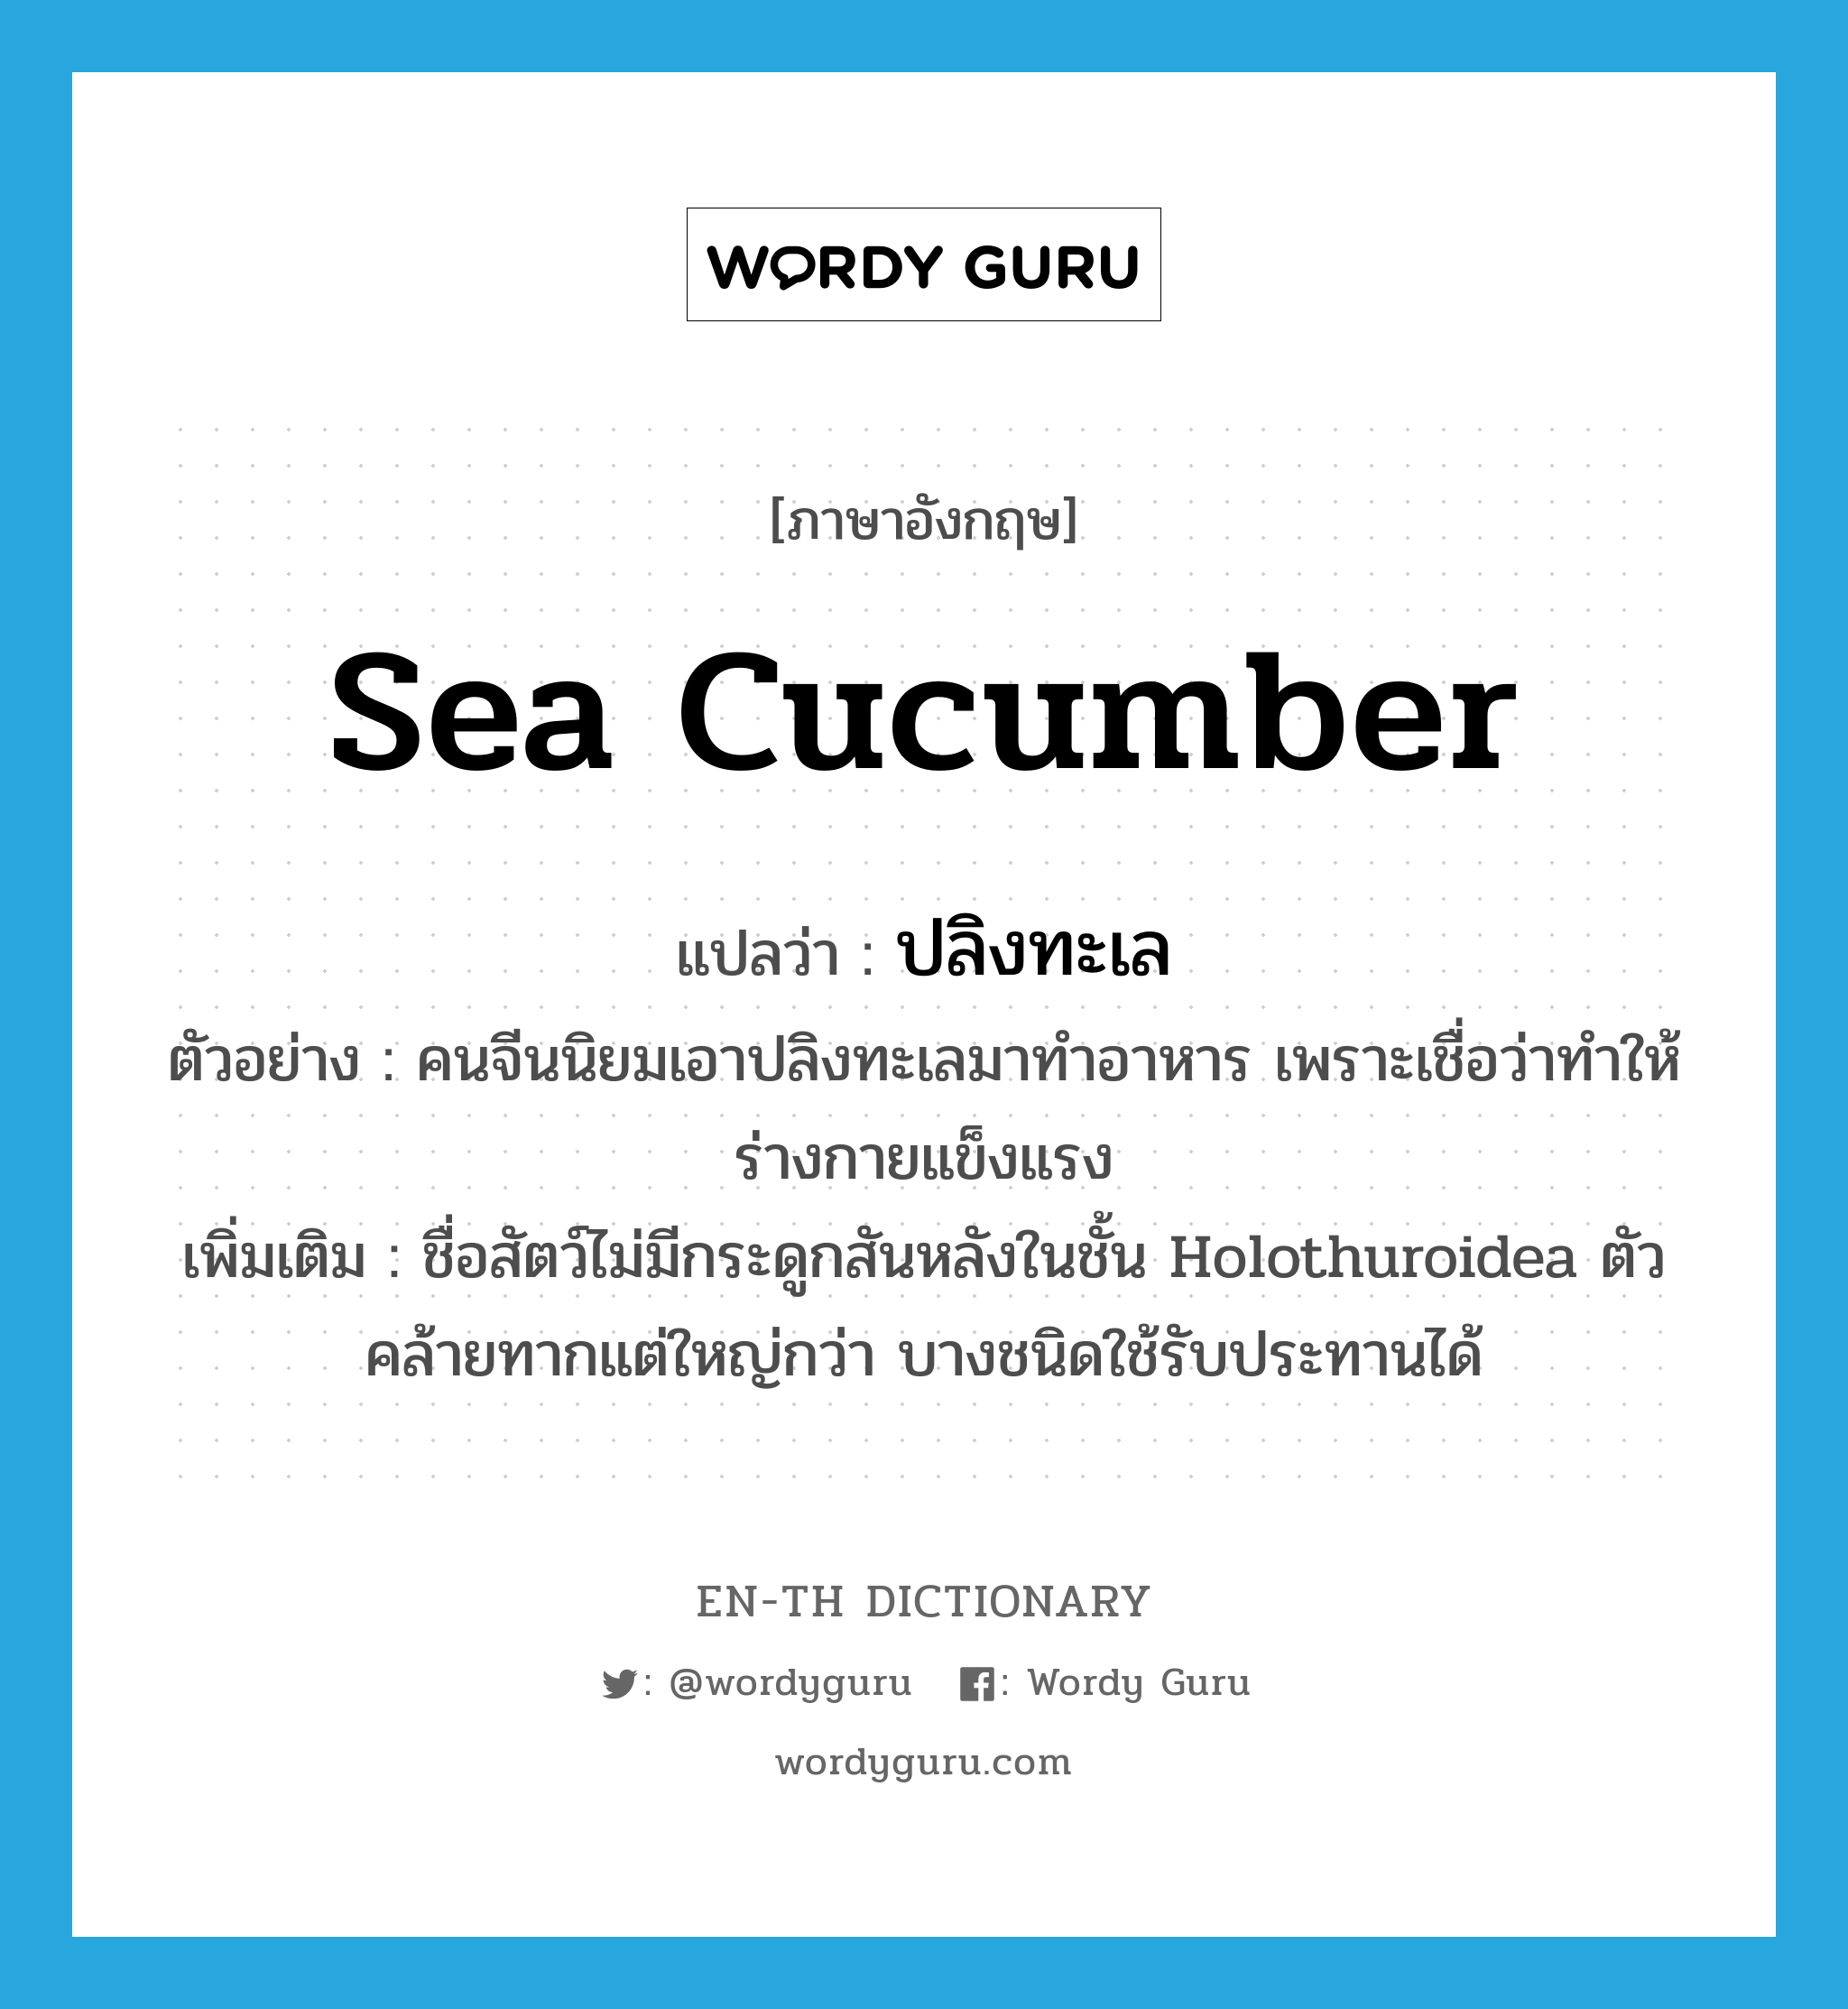 sea cucumber แปลว่า?, คำศัพท์ภาษาอังกฤษ sea cucumber แปลว่า ปลิงทะเล ประเภท N ตัวอย่าง คนจีนนิยมเอาปลิงทะเลมาทำอาหาร เพราะเชื่อว่าทำให้ร่างกายแข็งแรง เพิ่มเติม ชื่อสัตว์ไม่มีกระดูกสันหลังในชั้น Holothuroidea ตัวคล้ายทากแต่ใหญ่กว่า บางชนิดใช้รับประทานได้ หมวด N